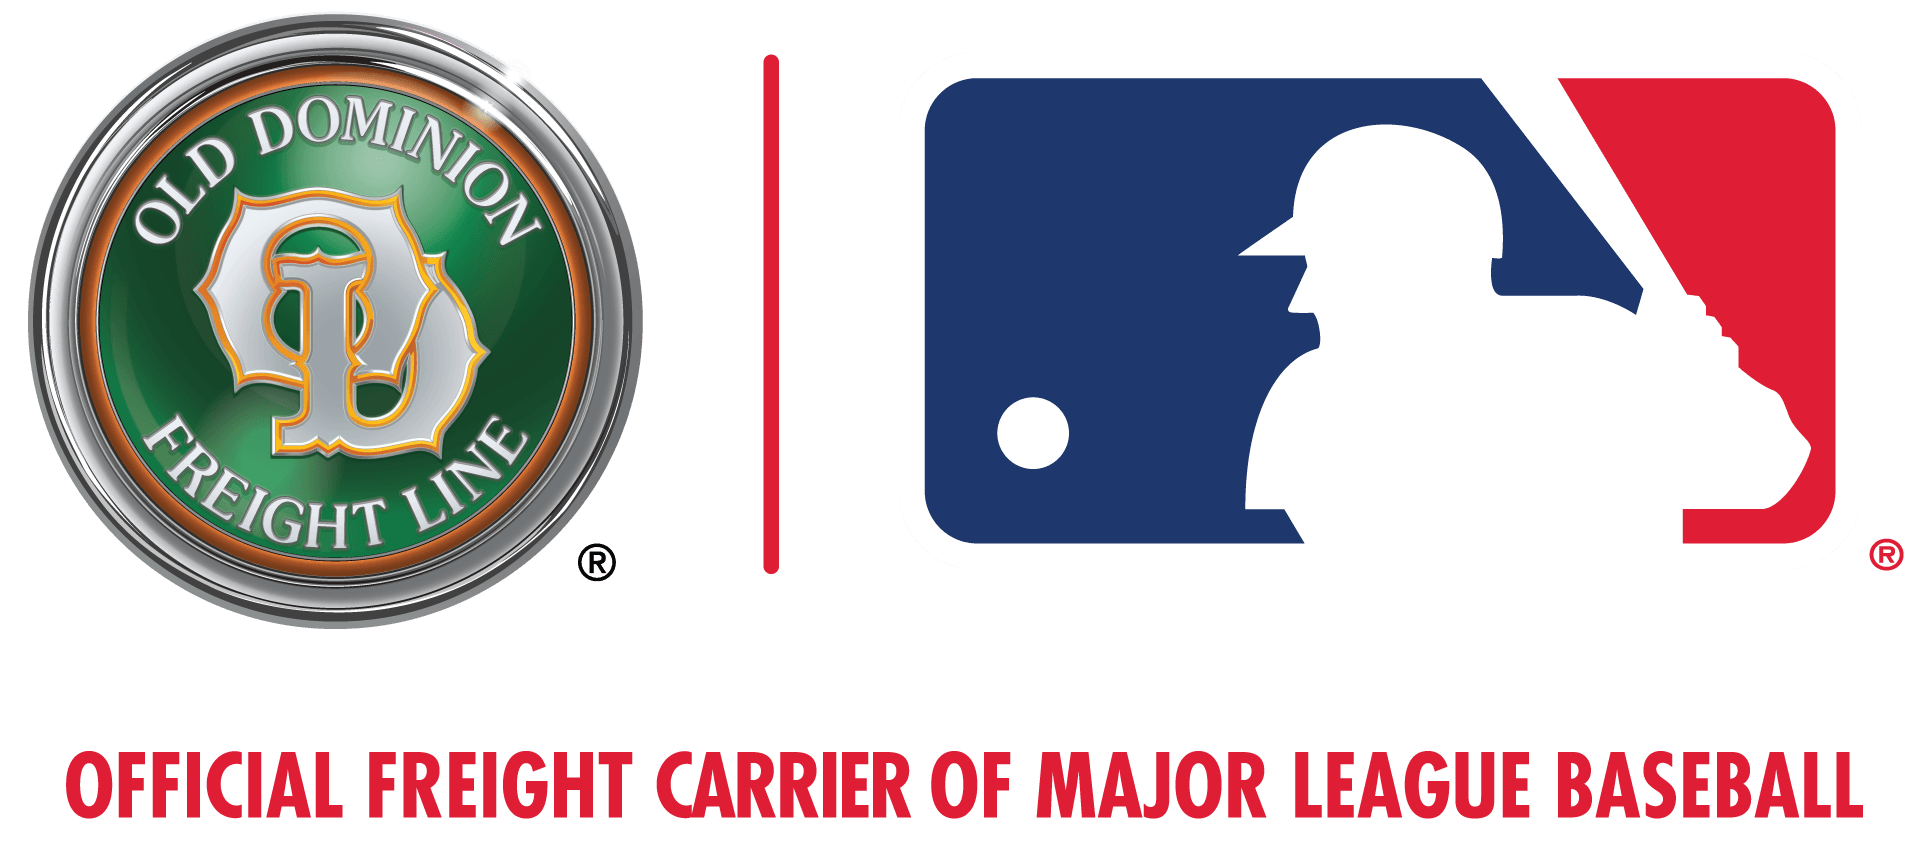 ODFL Logo - Major League Baseball